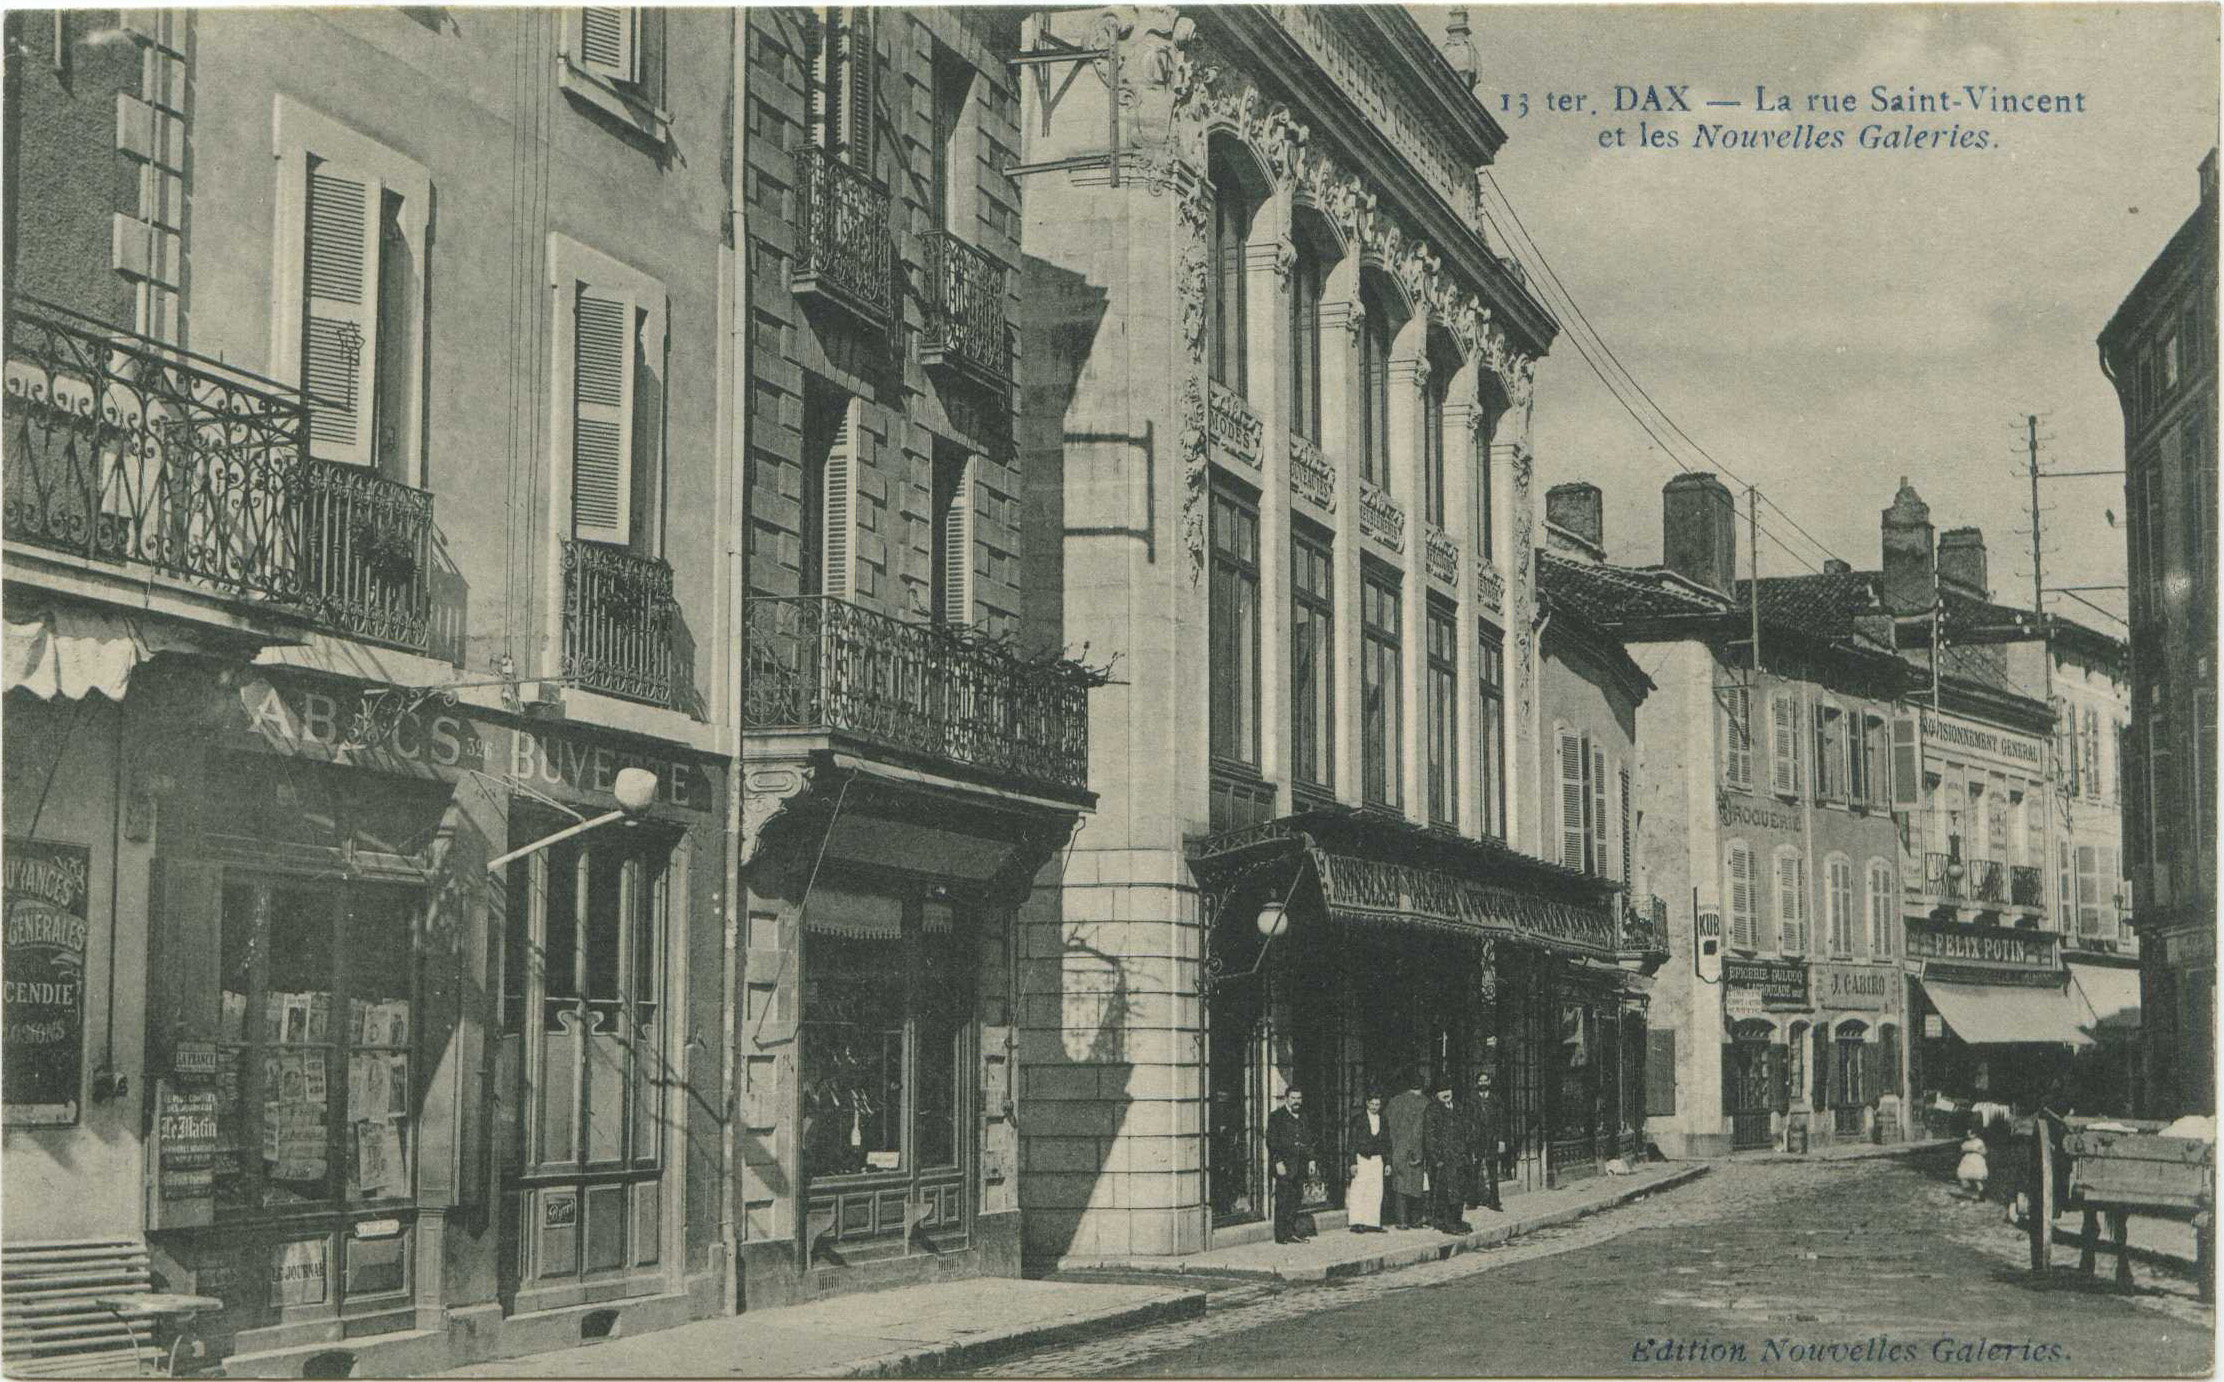 Dax - La rue Saint-Vincent et les Nouvelles Galeries.